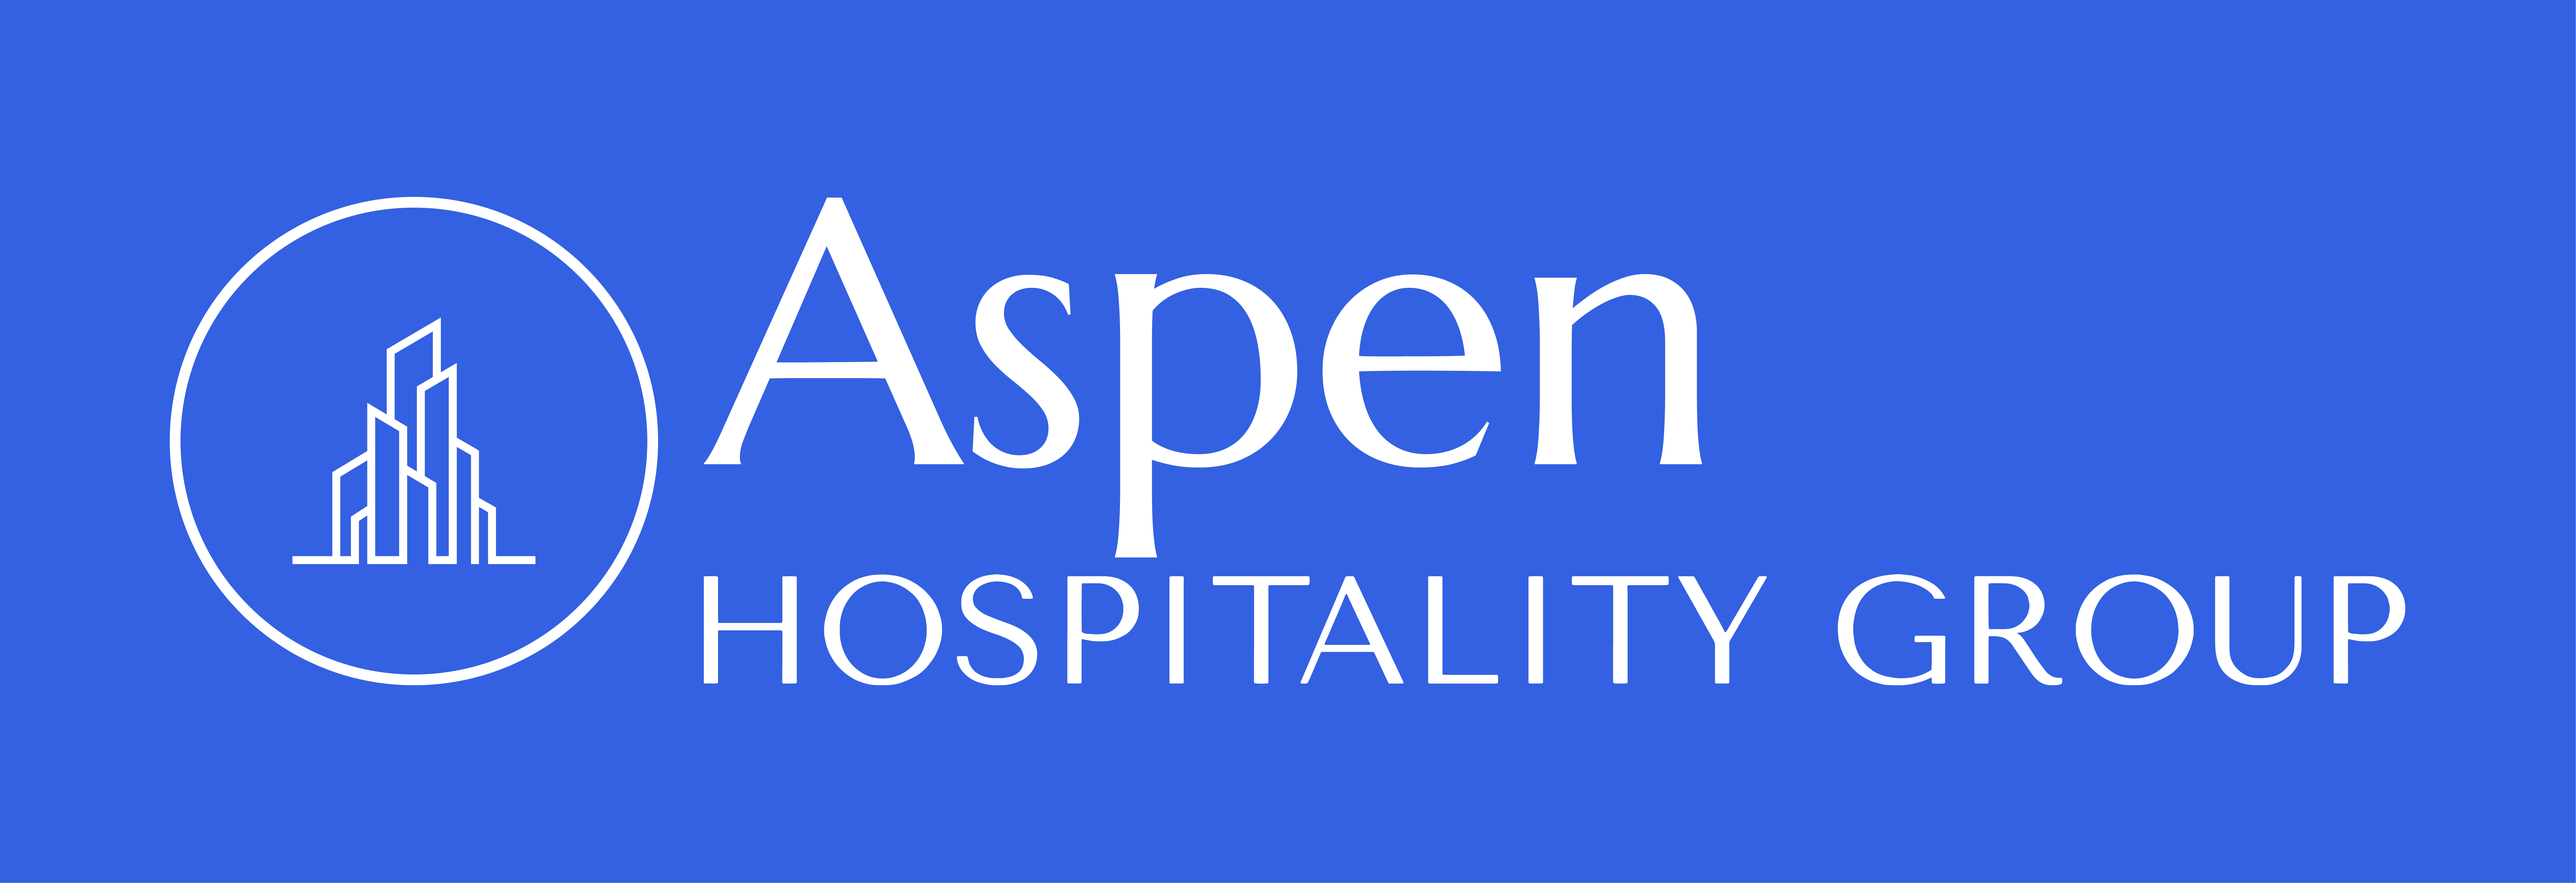 Aspen Hospitality Group Website